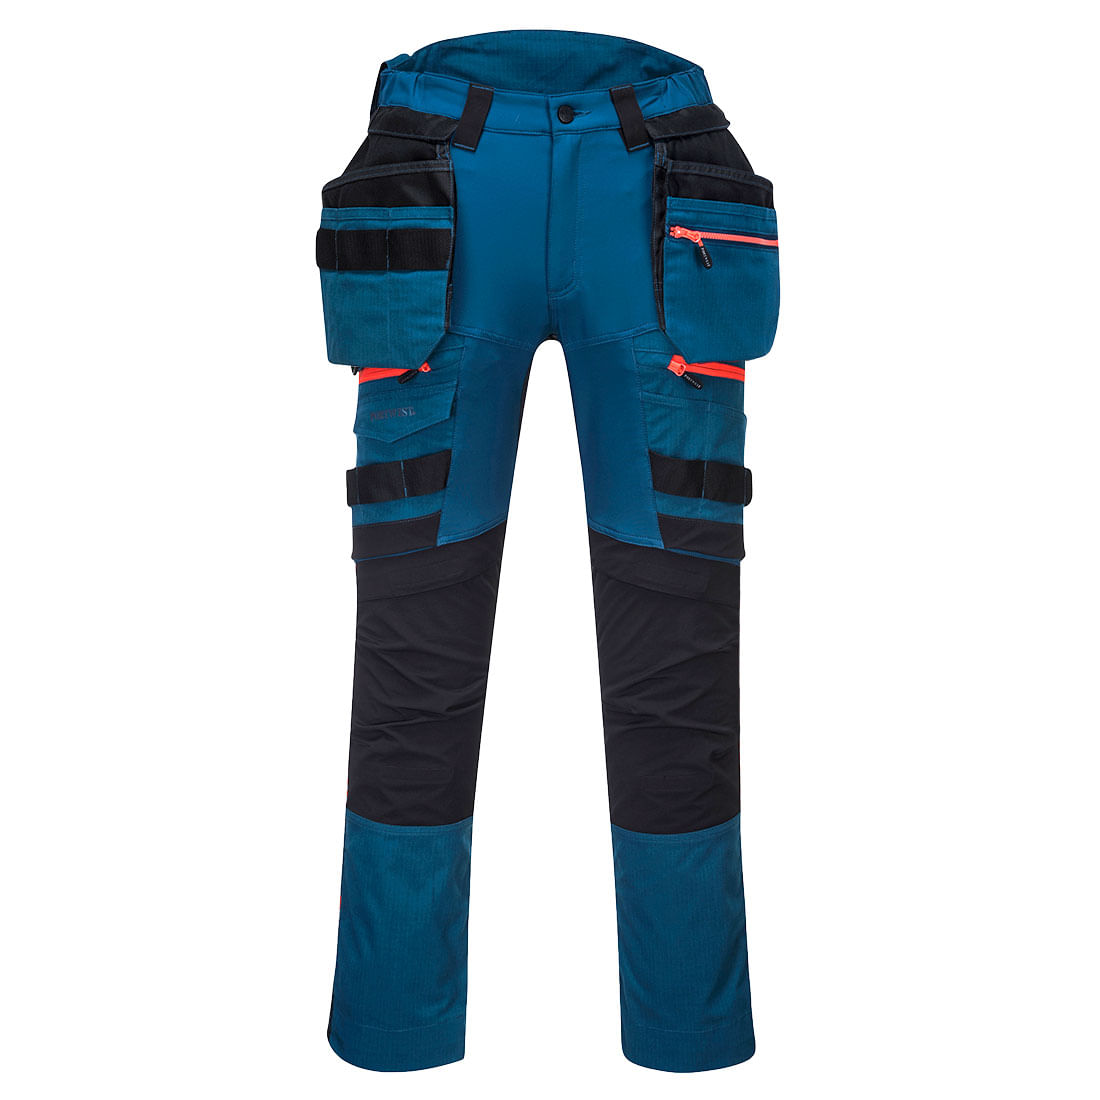 Pantaloni de protectie negru/albastru Portwest DX3 Marime 40 dacris.net imagine 2022 depozituldepapetarie.ro